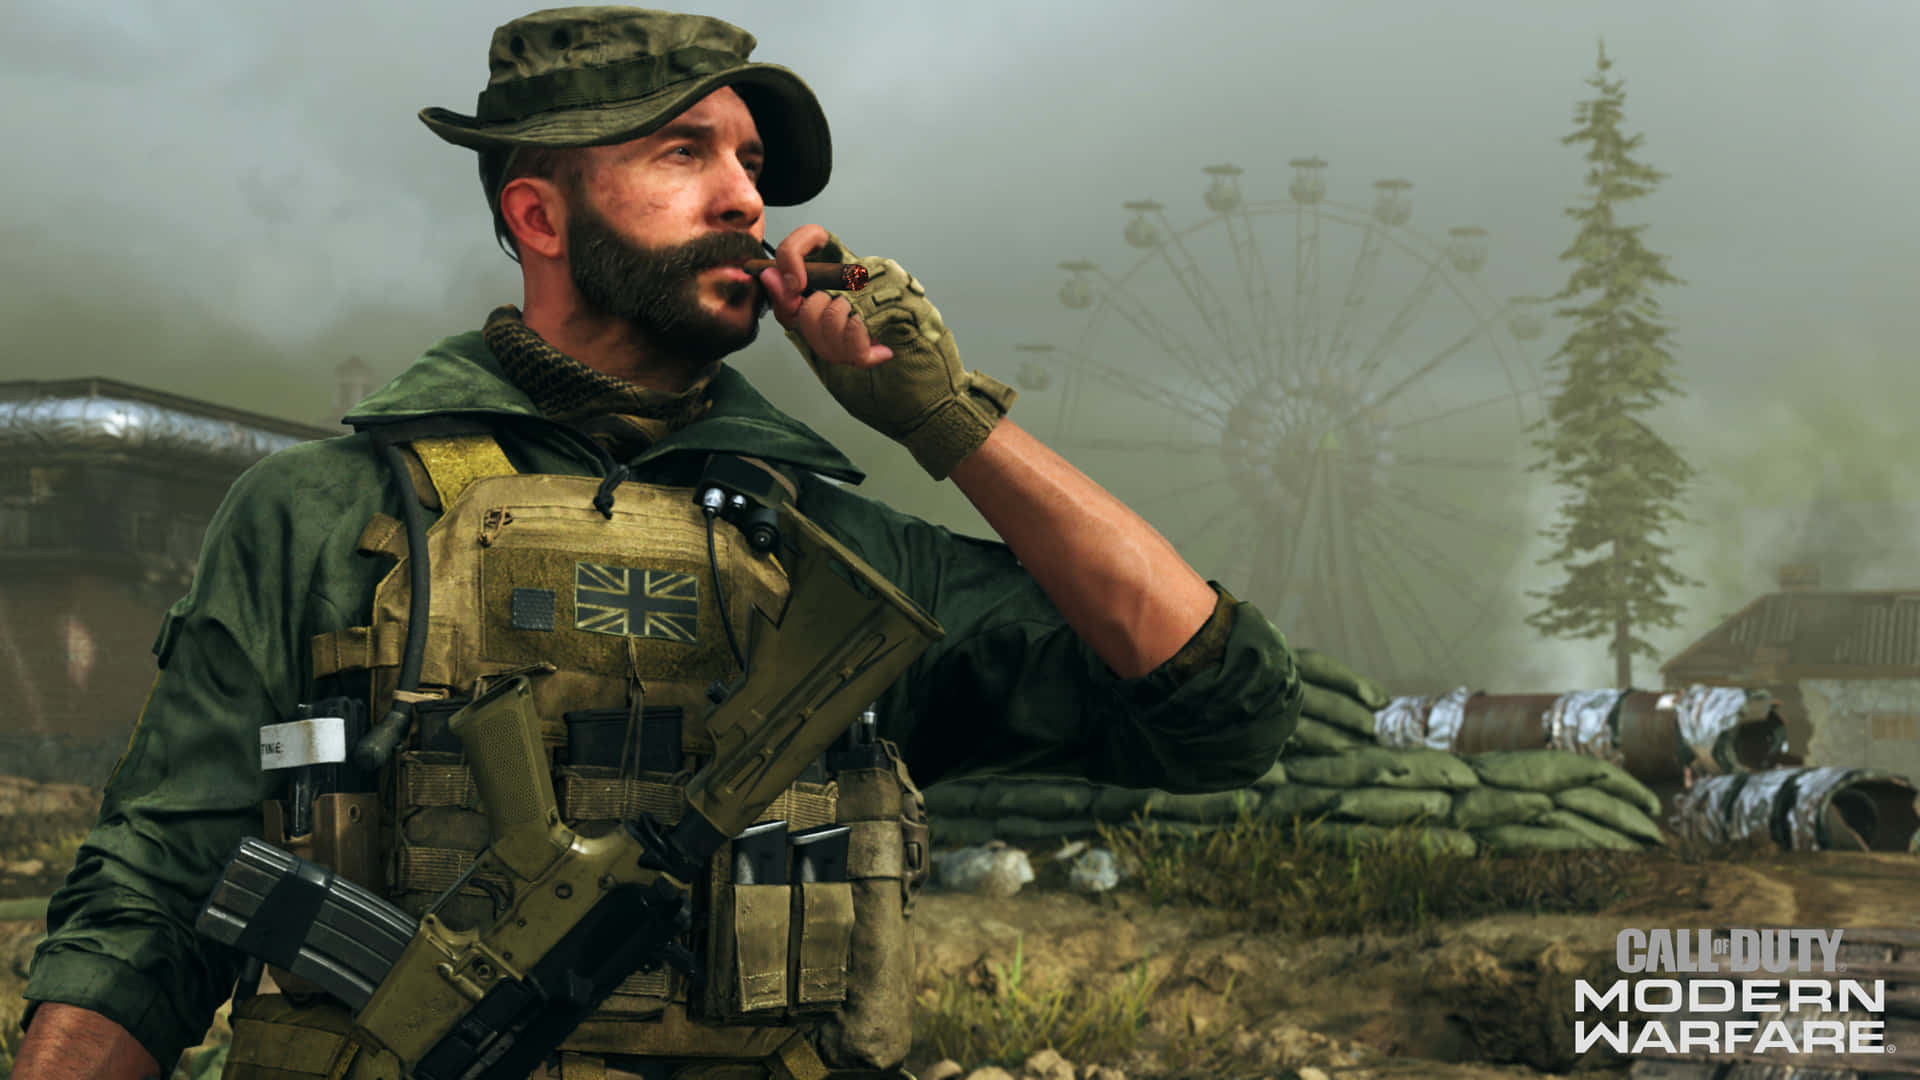 Vivil'emozionante Thriller Di Sparatutto Con Call Of Duty: Modern Warfare.